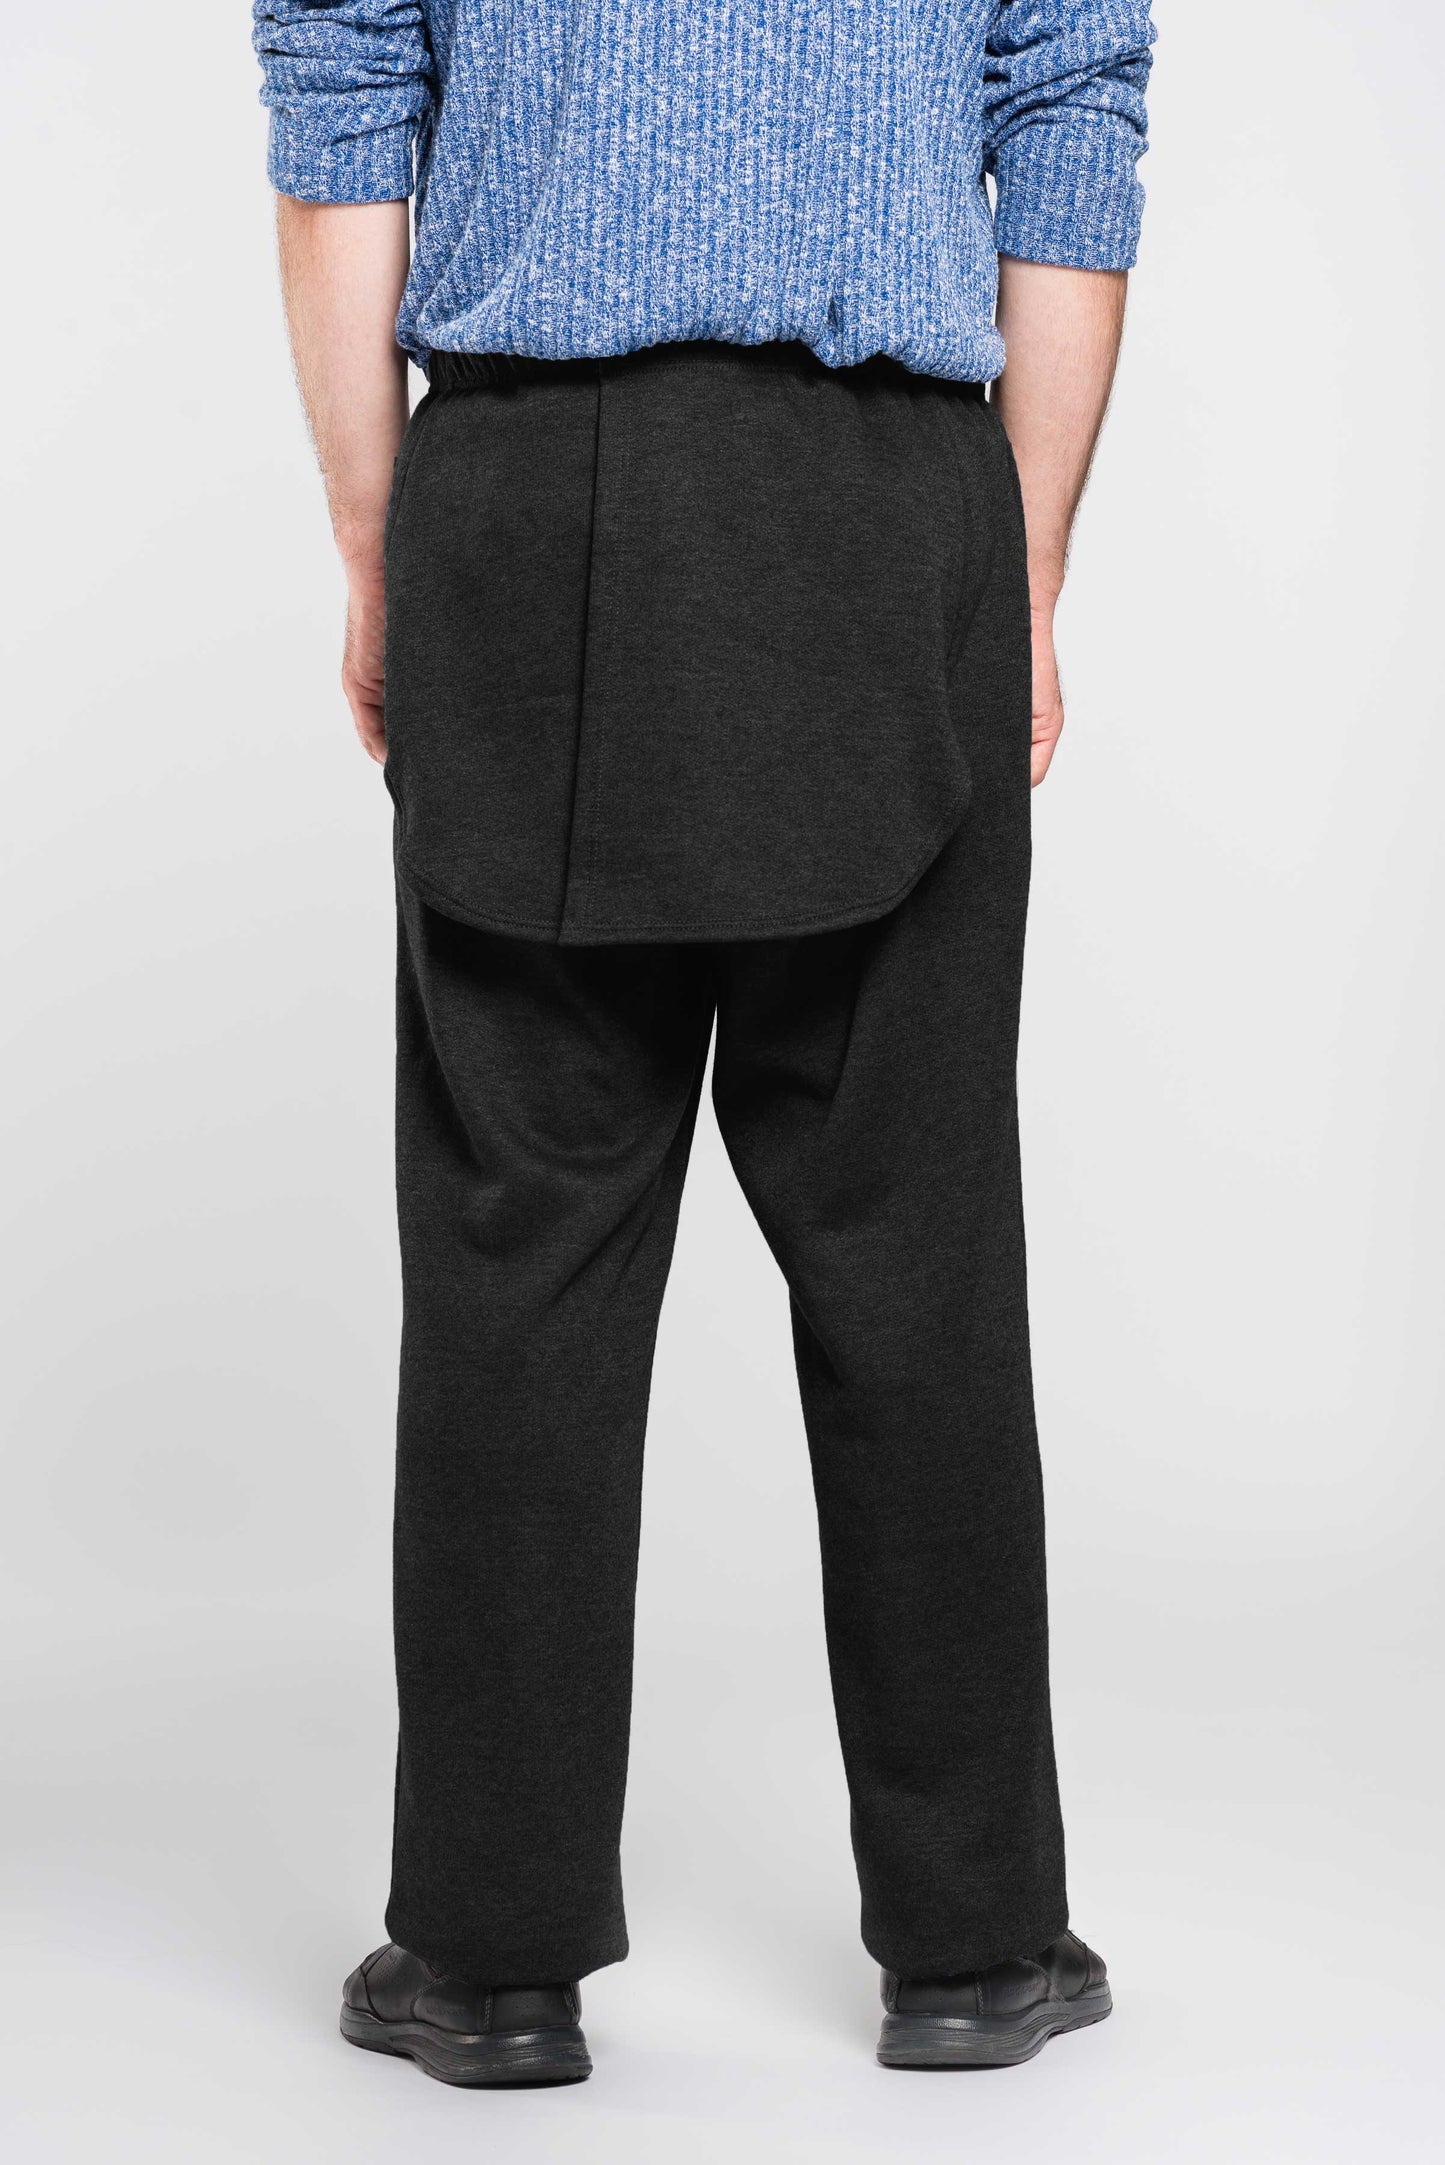 Pantalon noir sans siège, panneaux d'intimité en jersey | Modèle 1LP35 | CCV